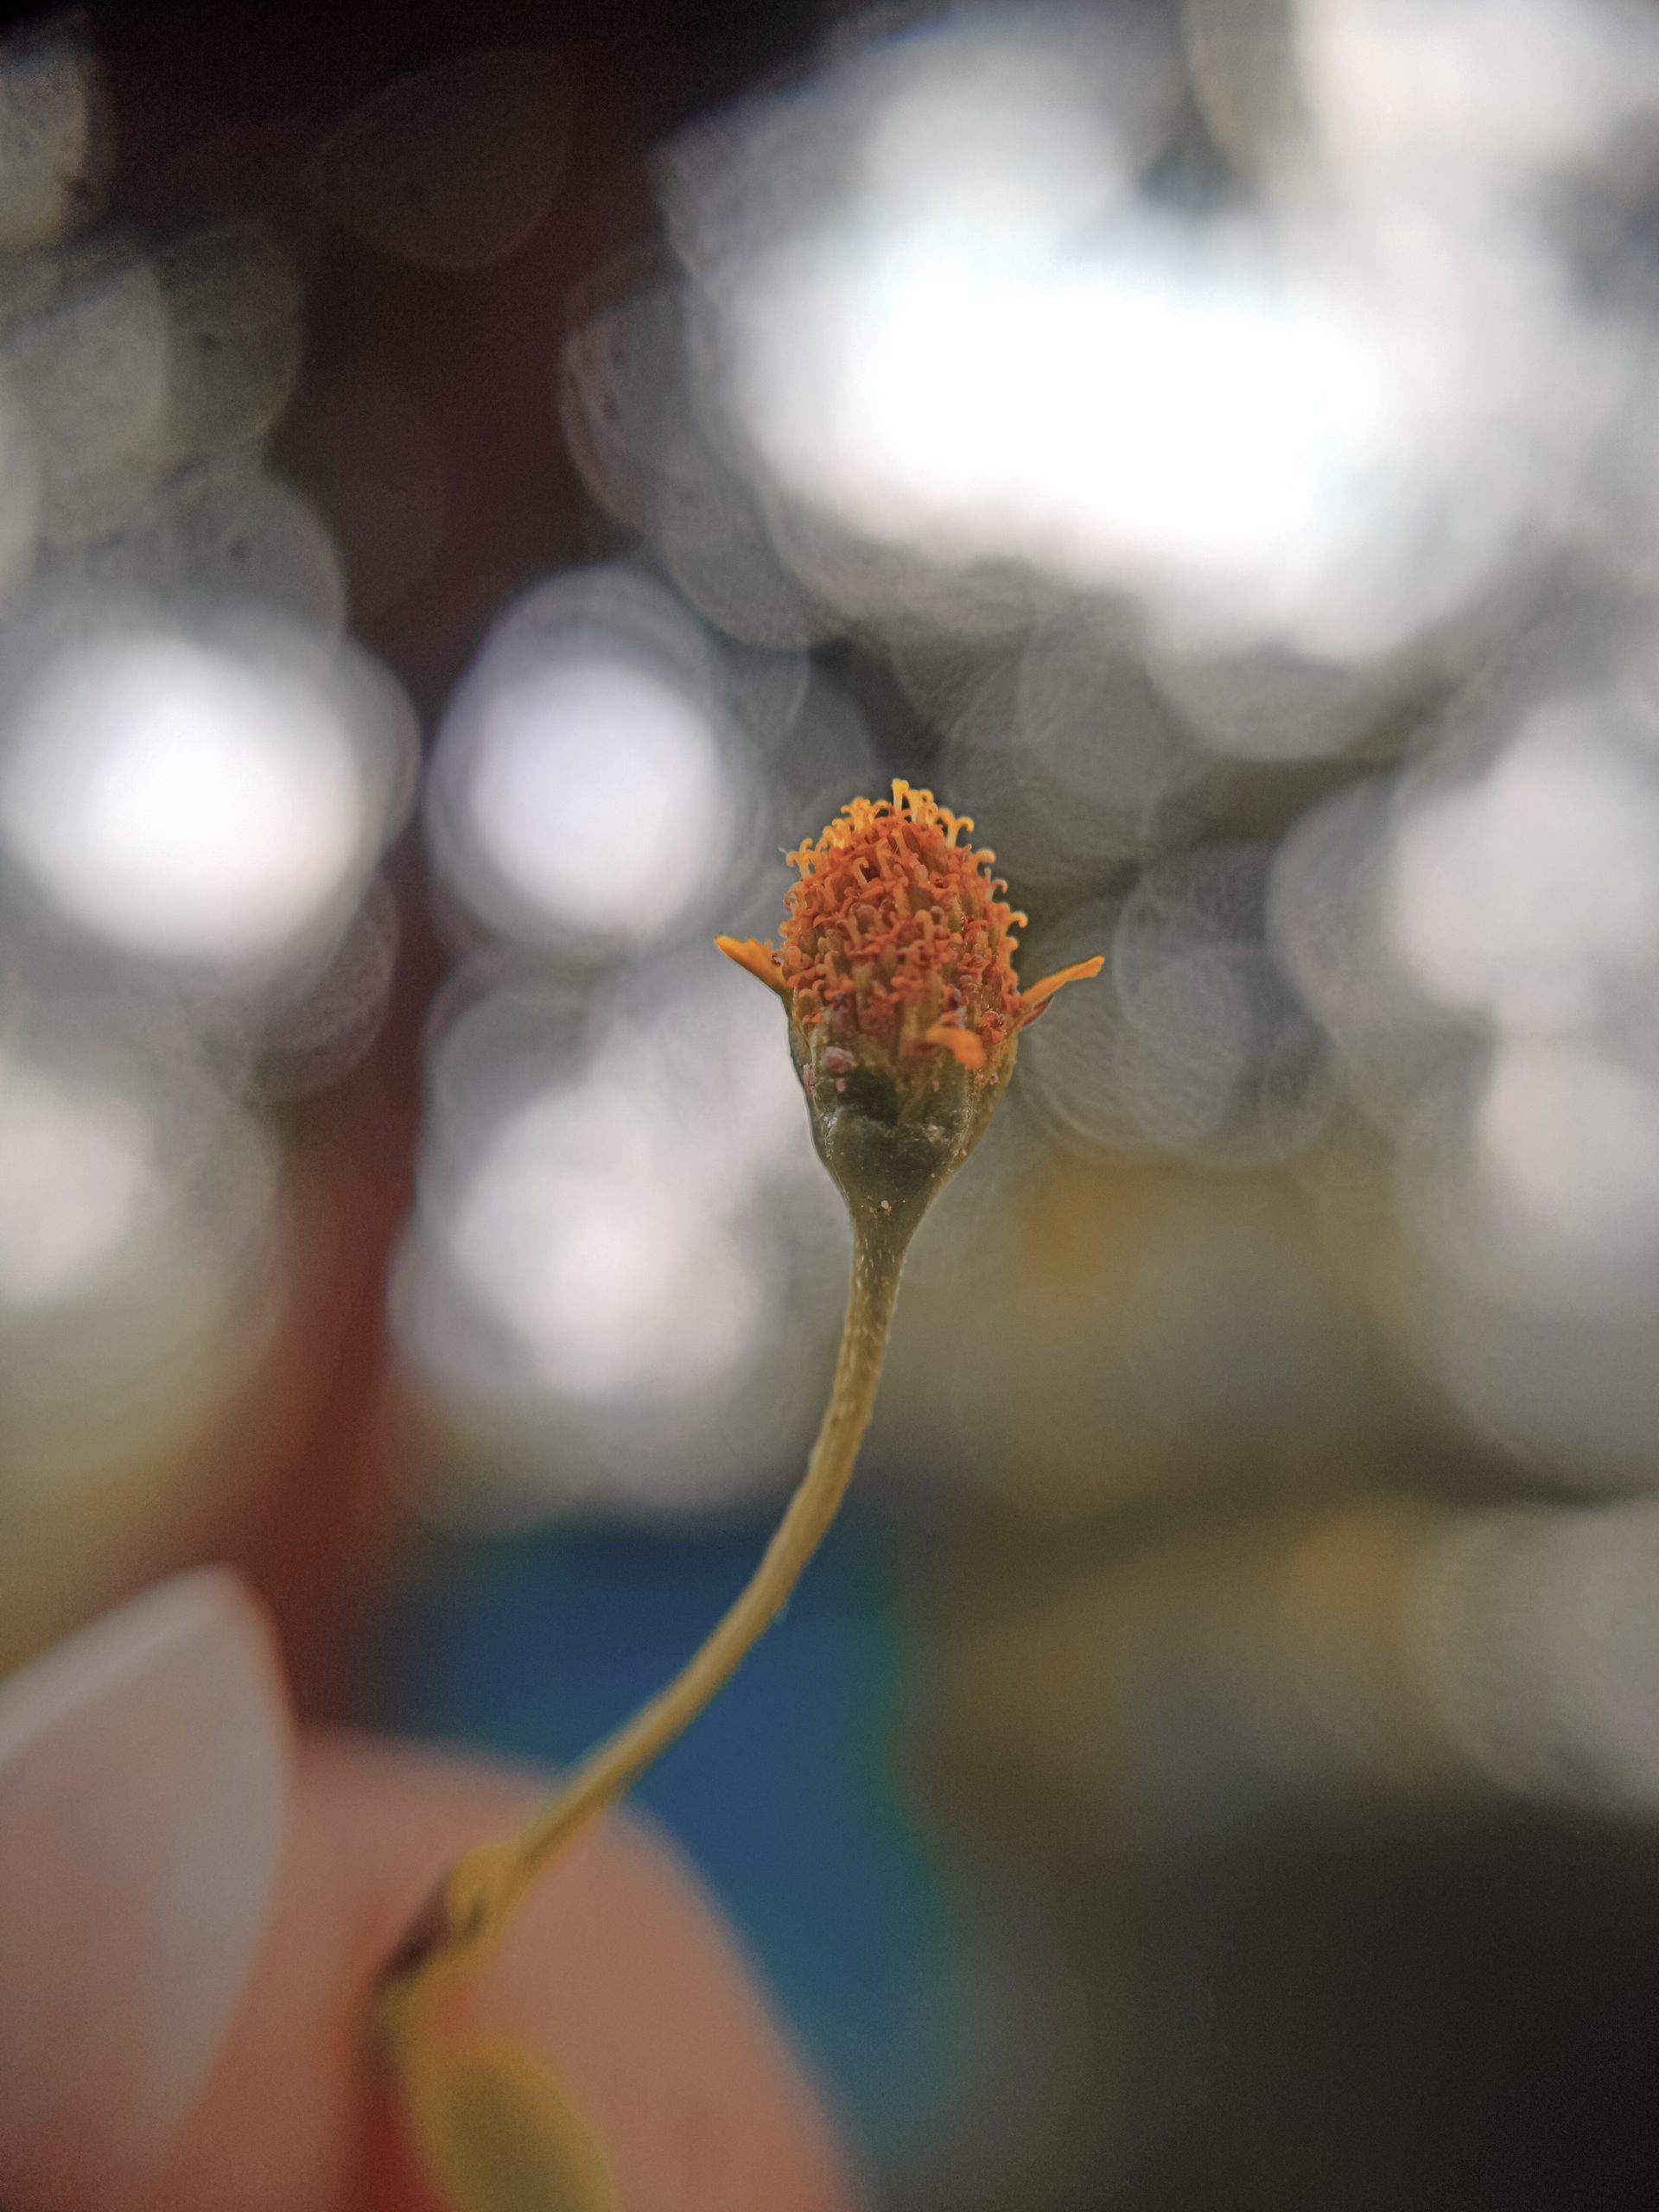 A flower bud